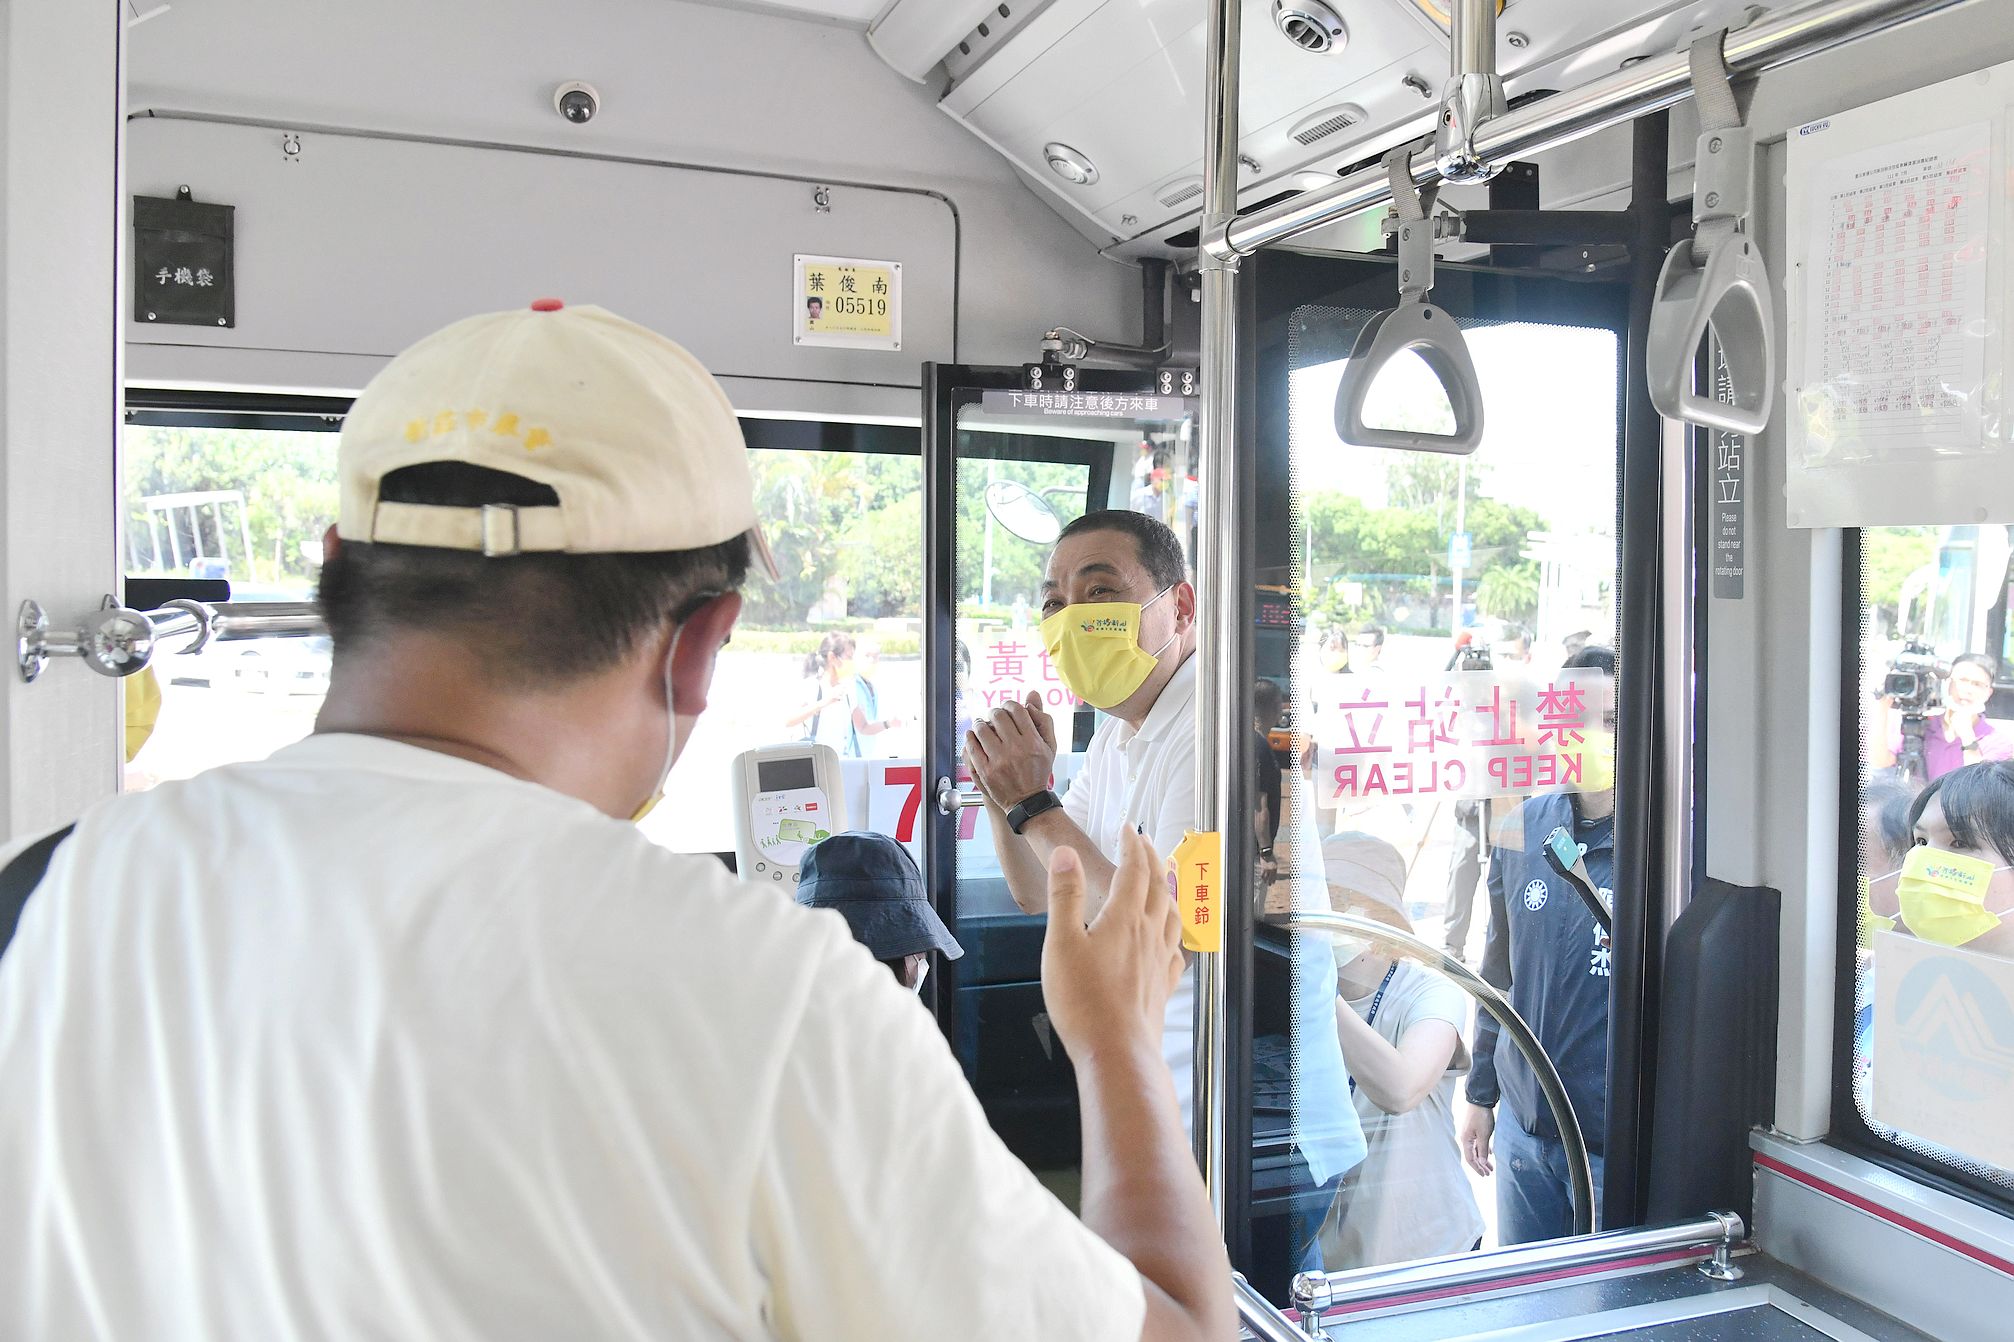 侯市長提醒搭乘公車的旅客做好防疫開心暢玩新北。